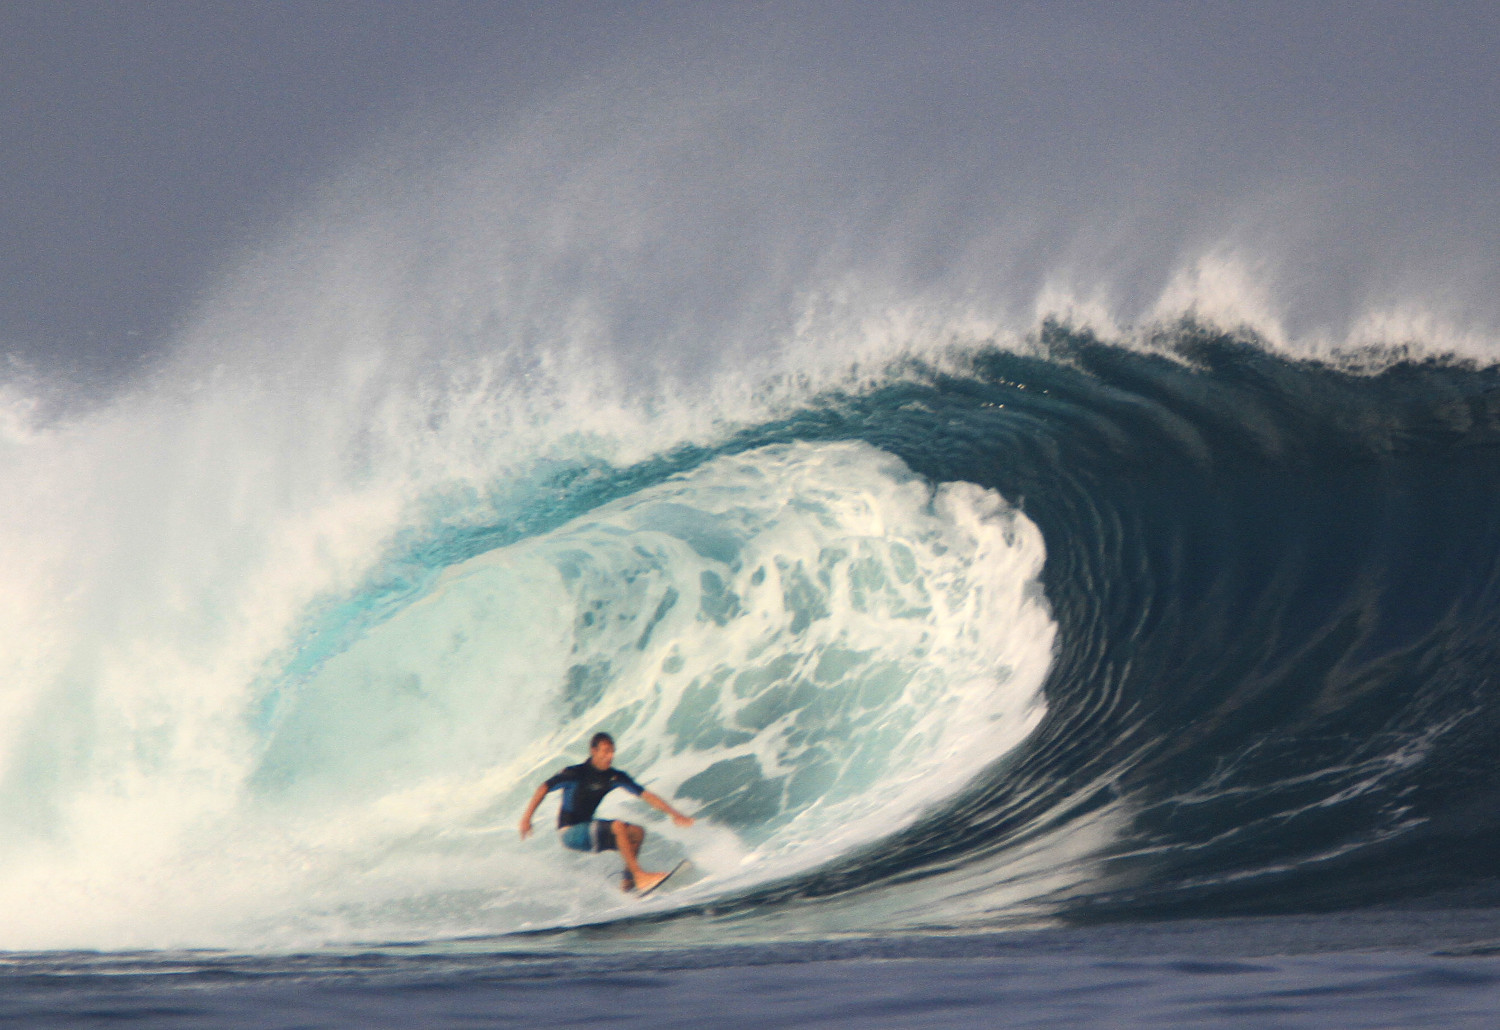 Muro Burgos surfing 2.4 meter waves at Way Jambu